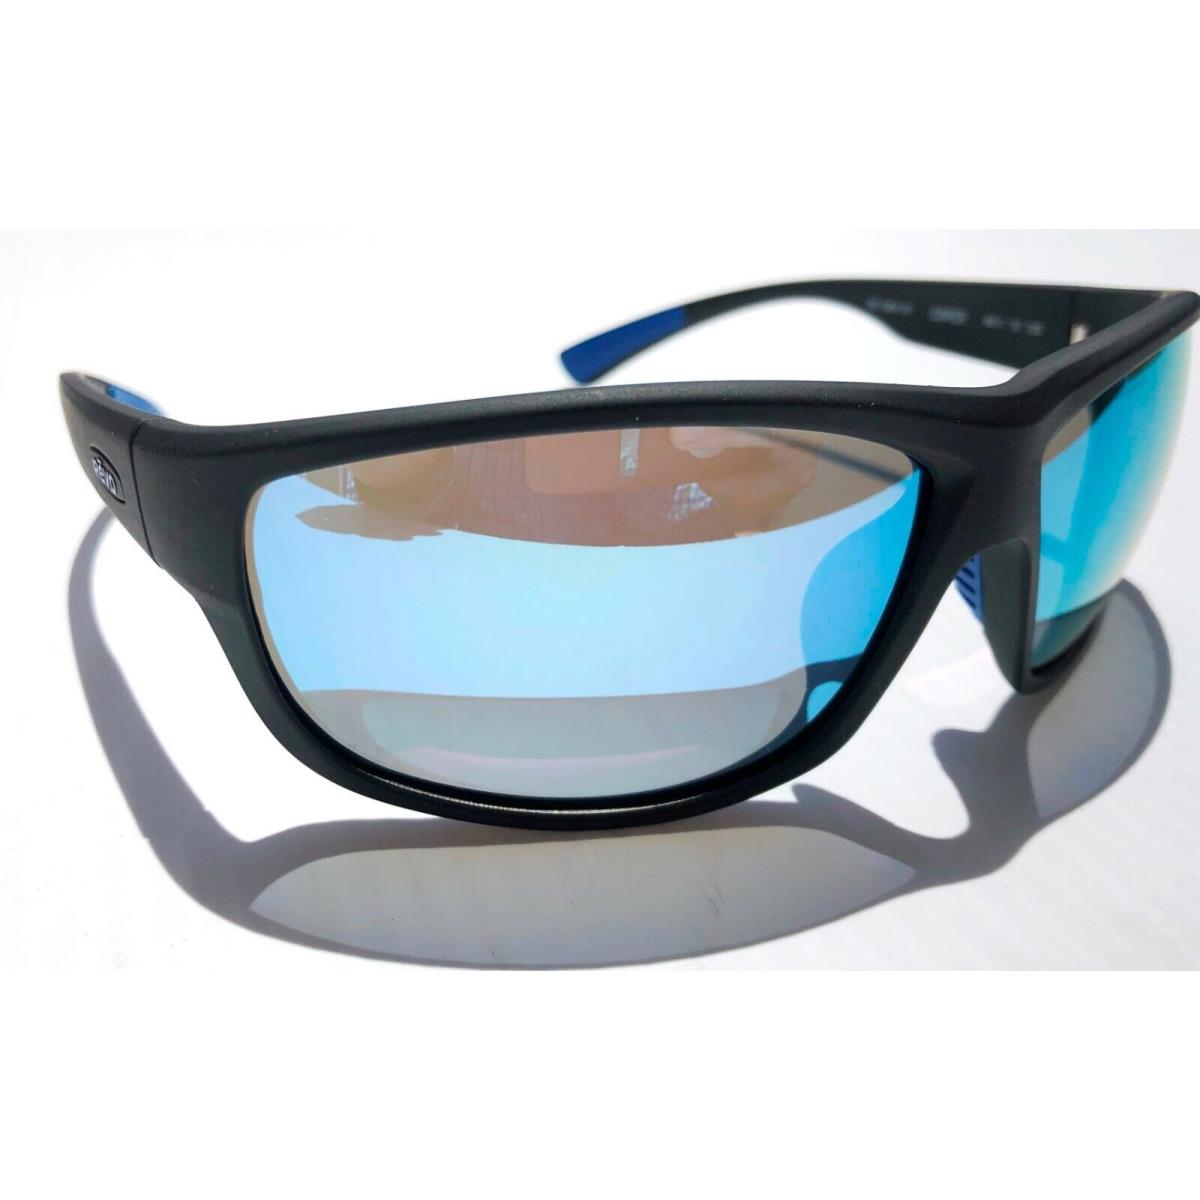 Revo Caper Bear Grylls Mat Black Polarized Blue Water Sunglass 1092 01 BL